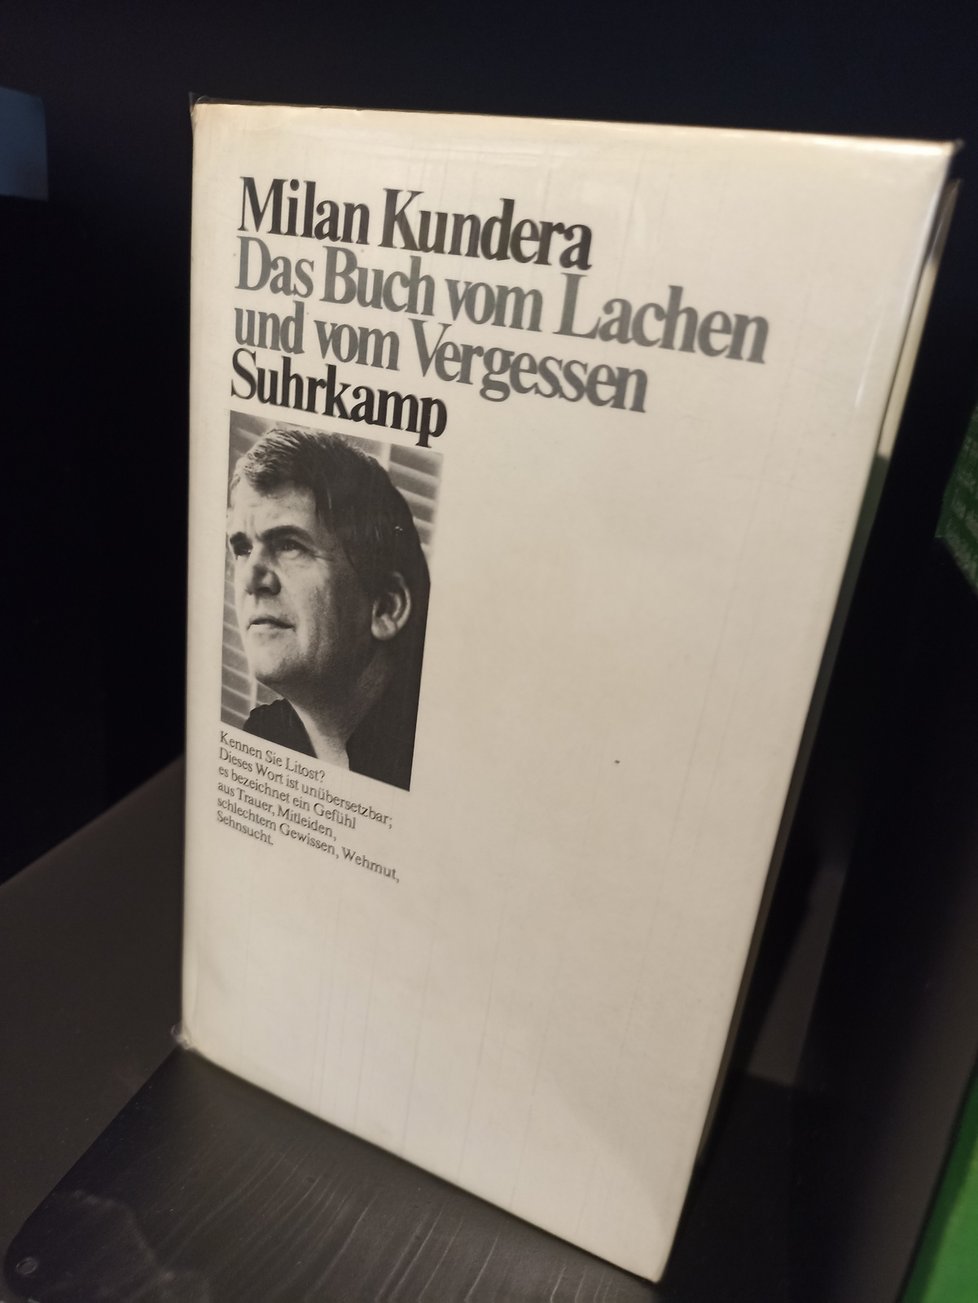 Knihovna Milana Kundery vznikla v areálu Moravské zemské knihovny letos 1. dubna v den 94. narozenin spisovatele.